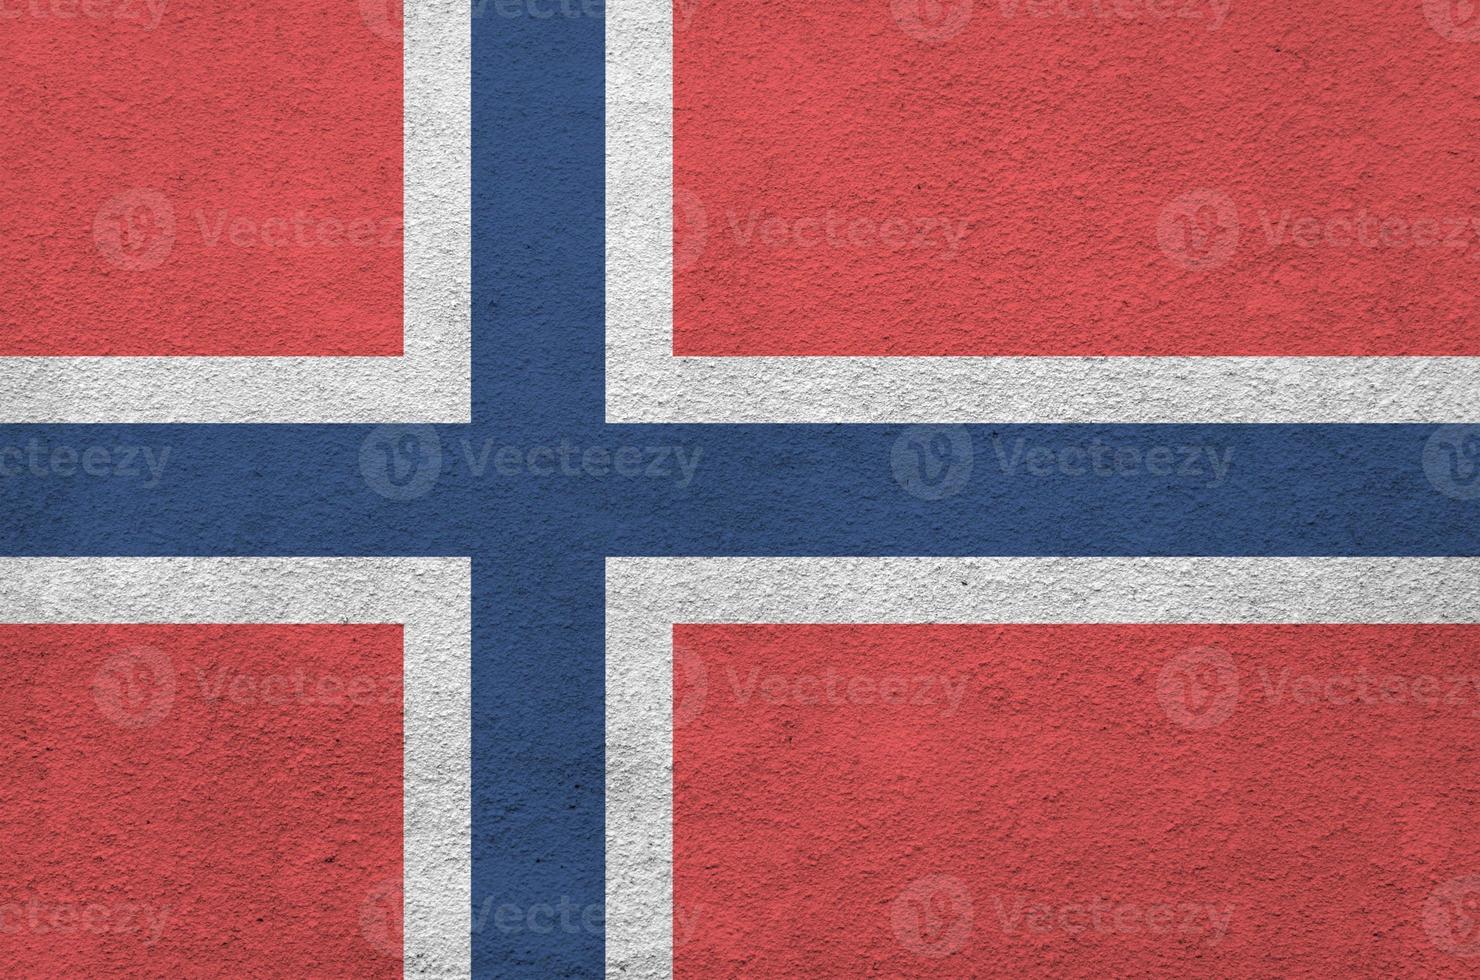 Norge flagga avbildad i ljus måla färger på gammal lättnad putsning vägg. texturerad baner på grov bakgrund foto